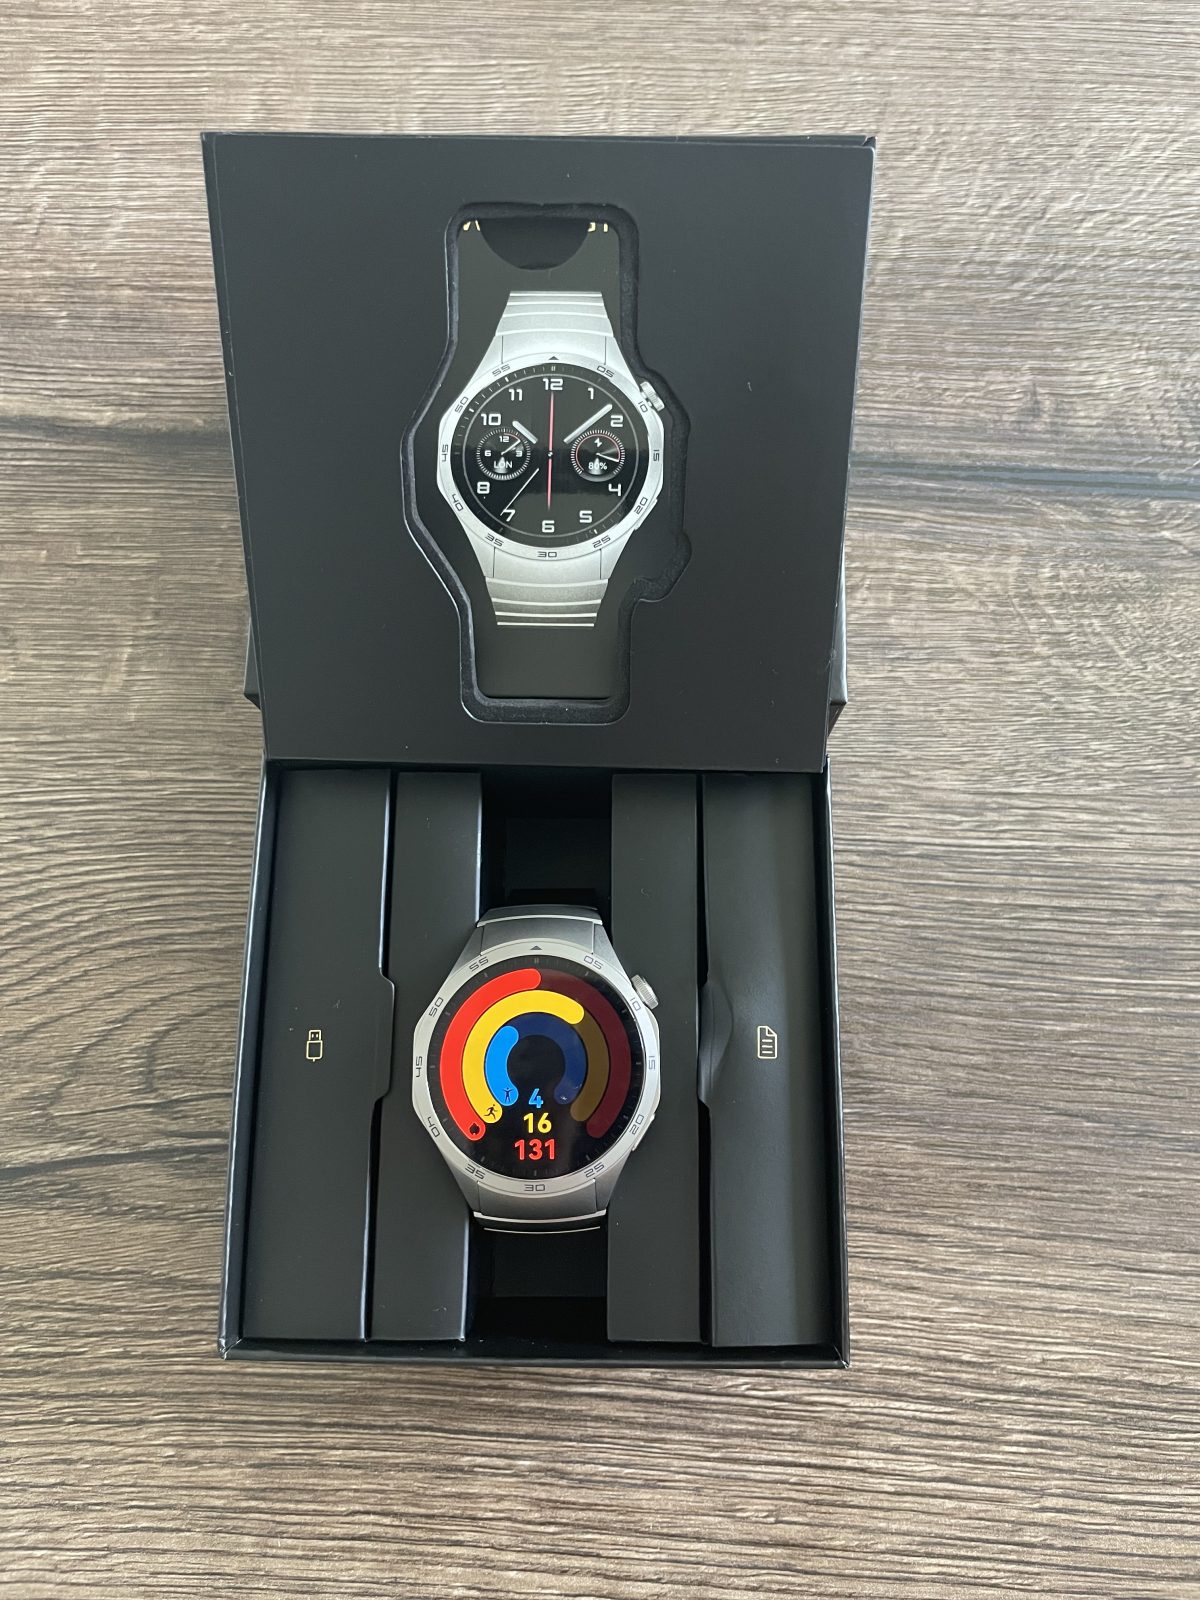 Recenzja Huawei Watch GT 4 Elite. Elegancja i długi czas pracy